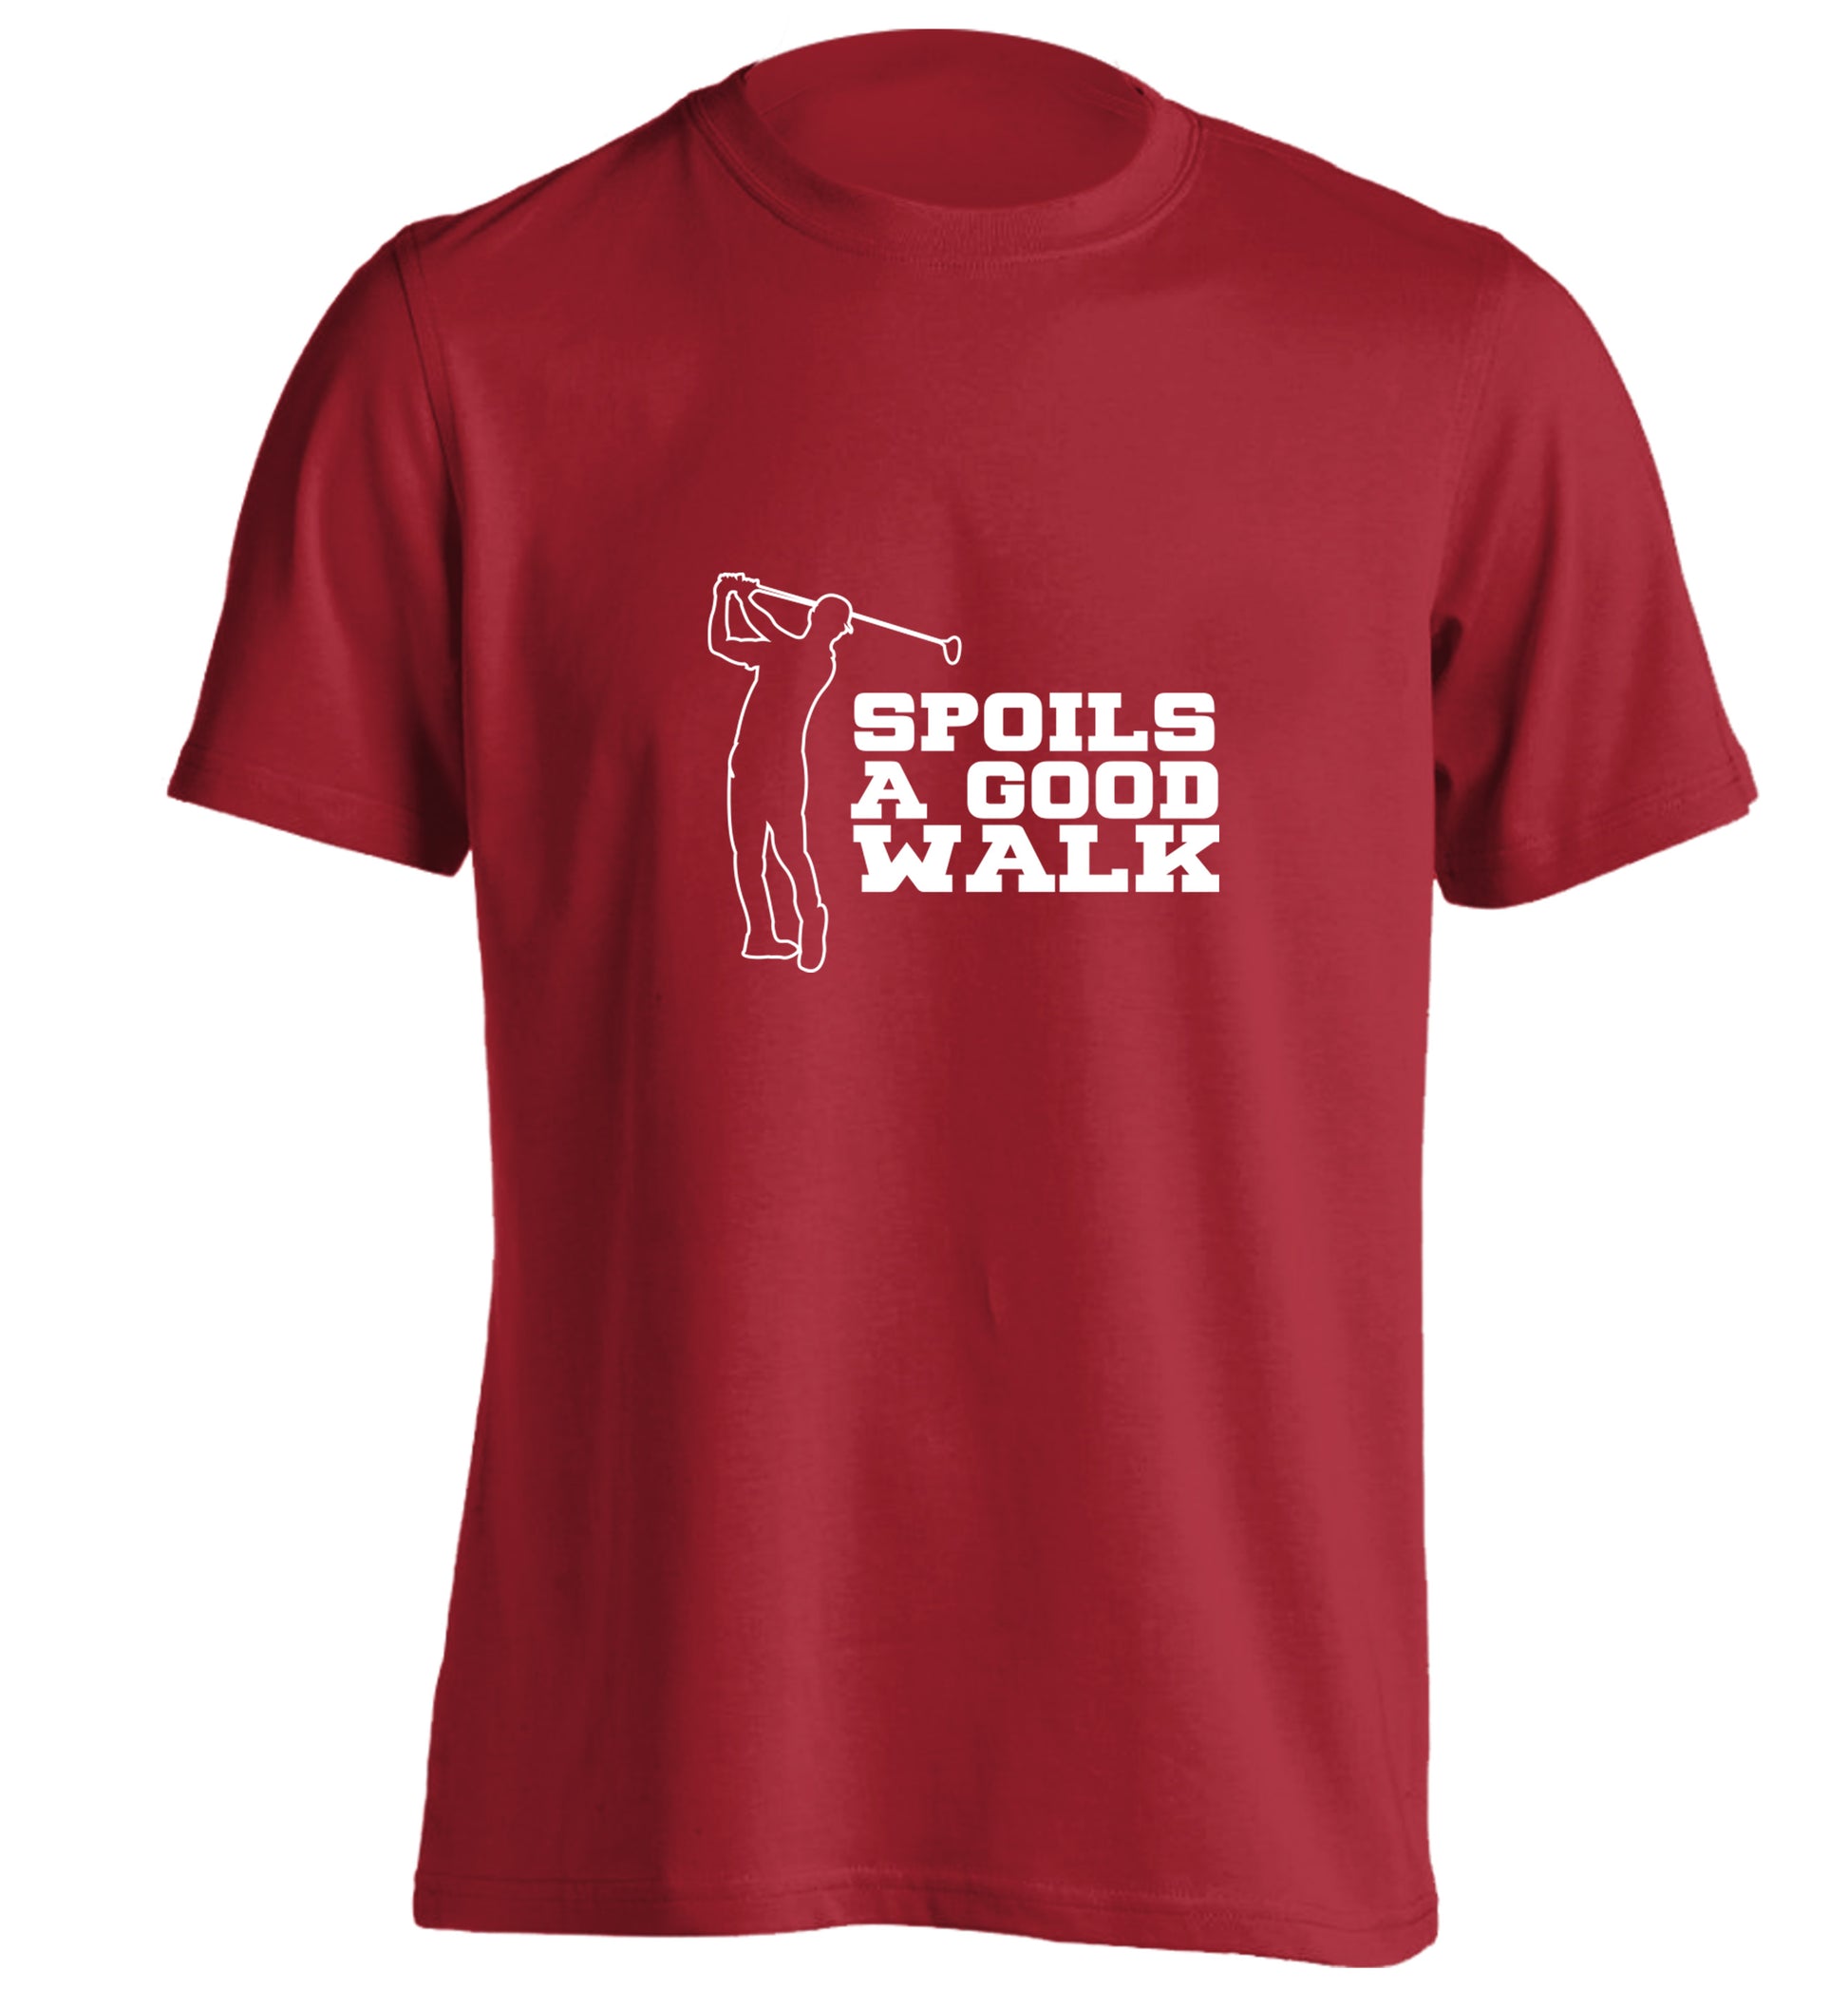 Golf spoils a good walk adults unisex red Tshirt 2XL